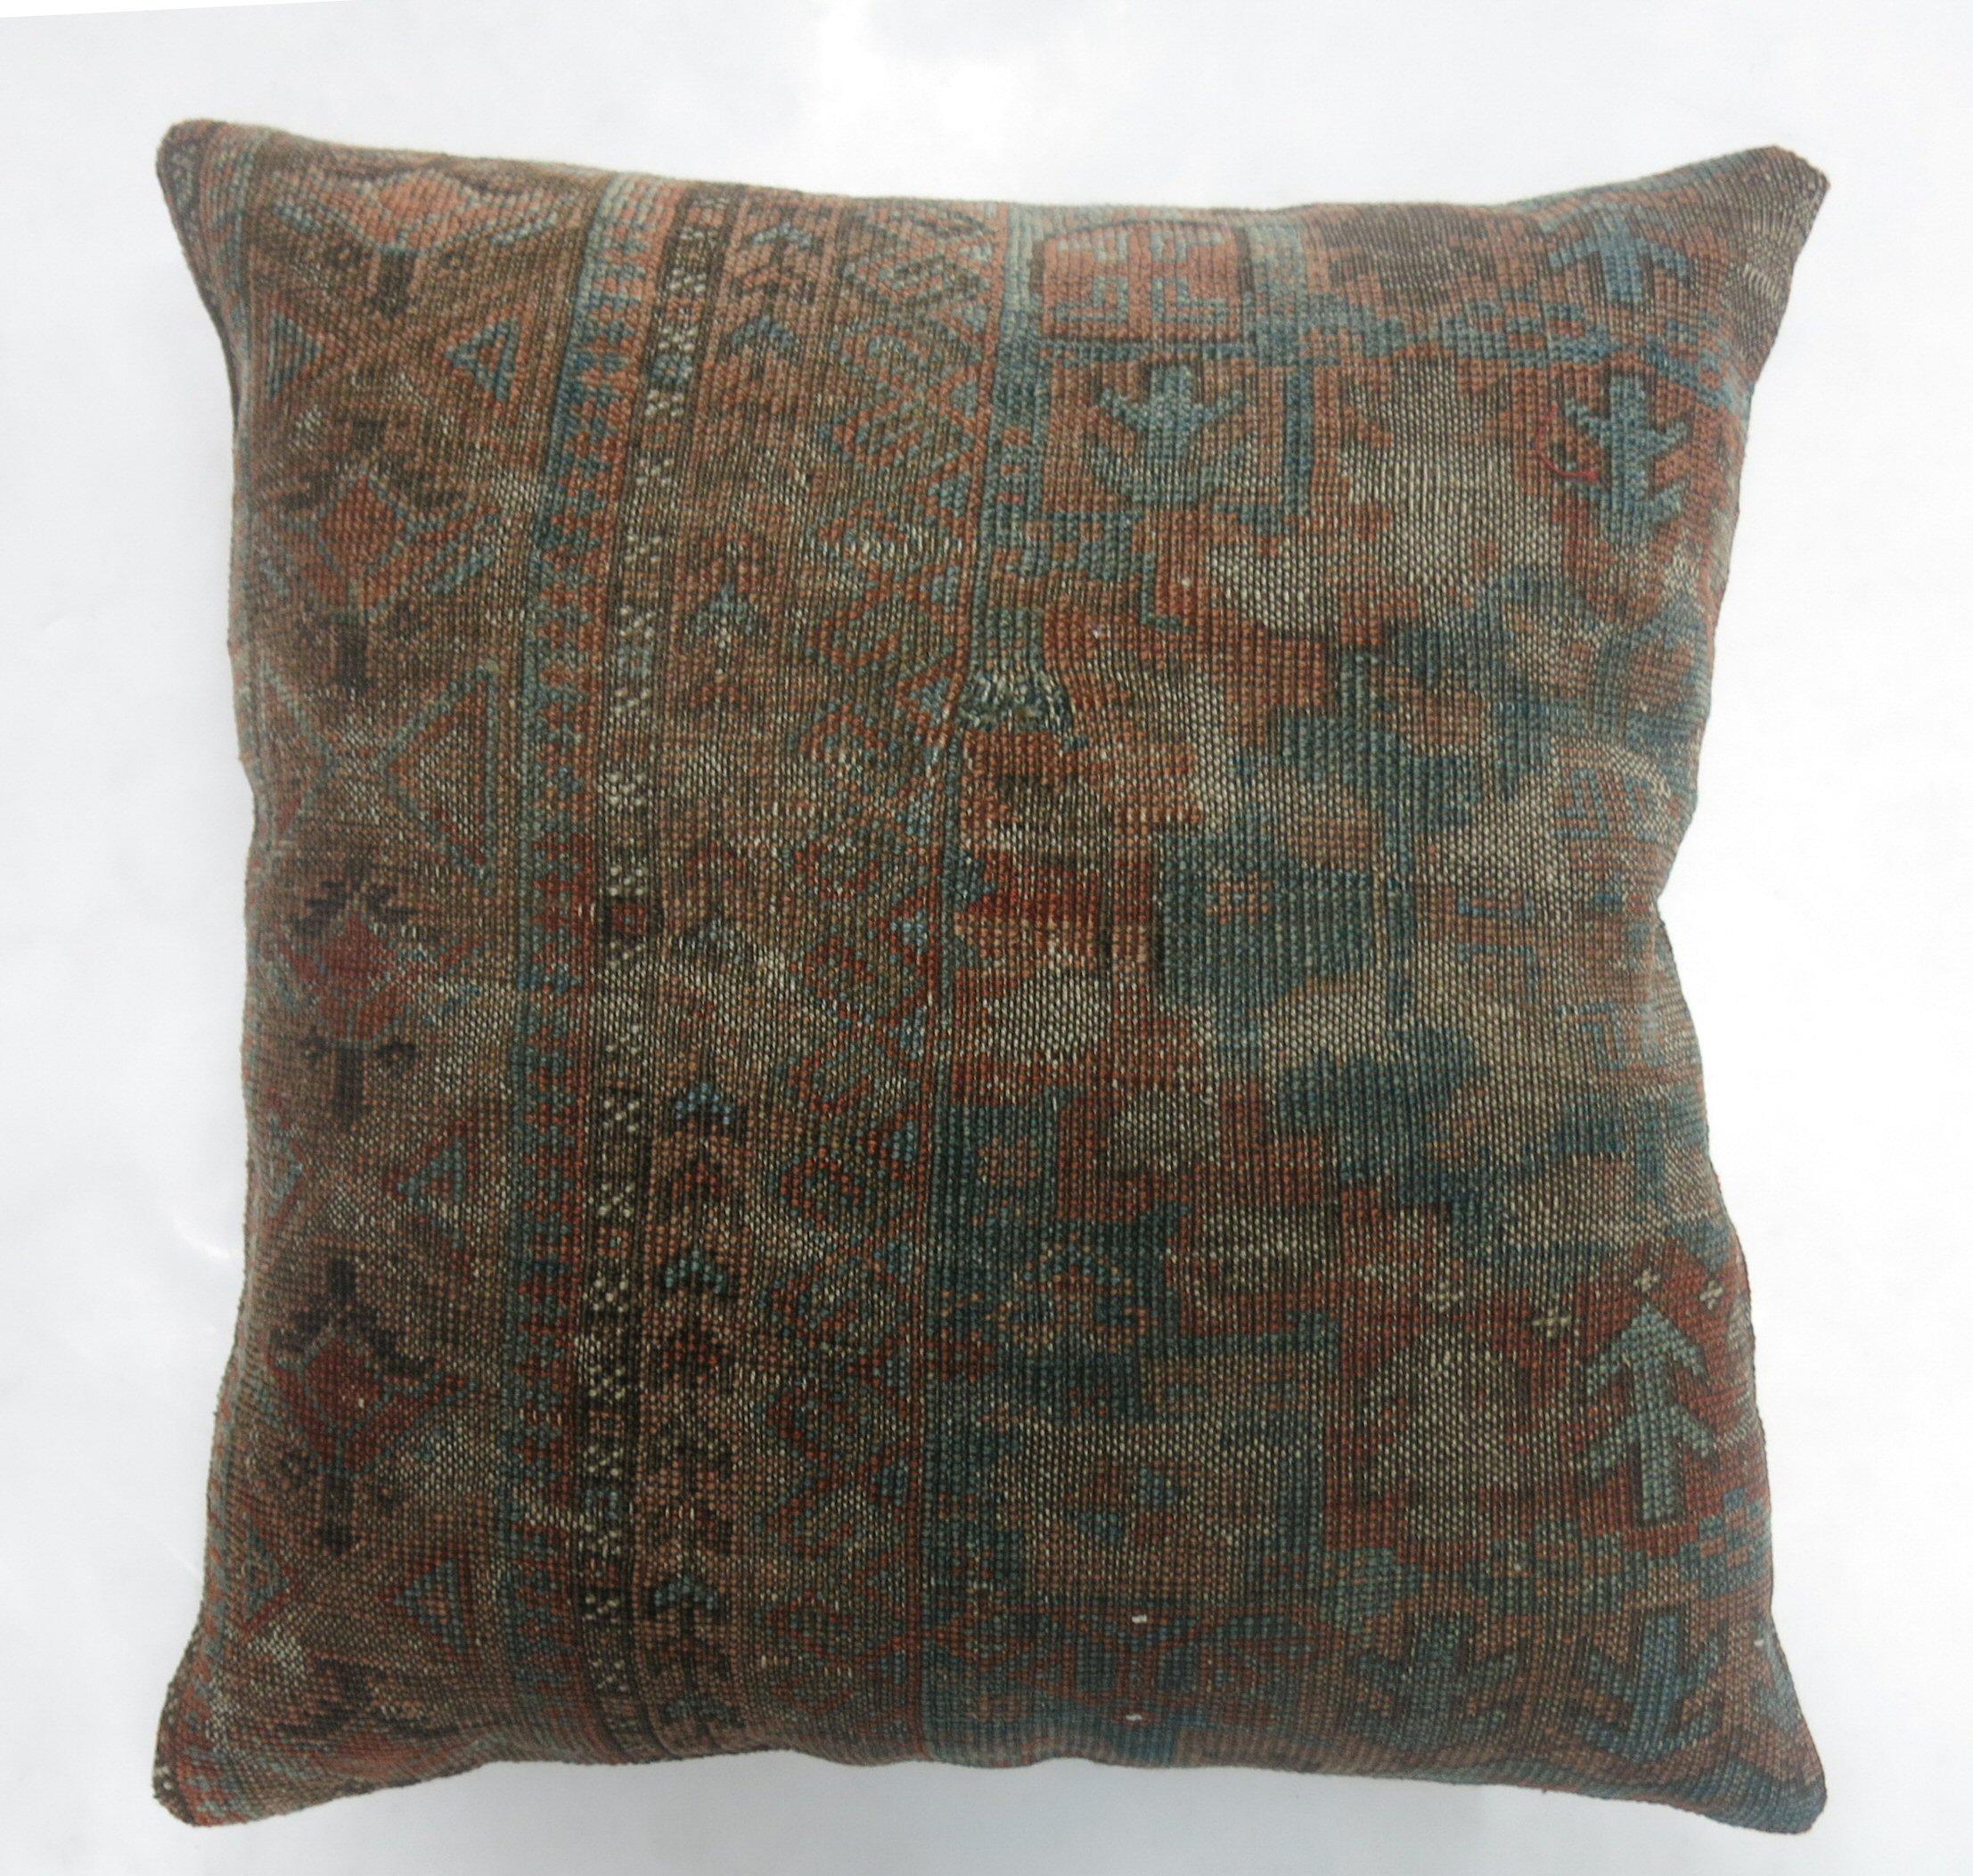 Kissen aus einem antiken Ersari-Teppich aus dem 19. Jahrhundert in Blau und Braun mit Baumwollrücken.

Maße: 20'' x 20''.